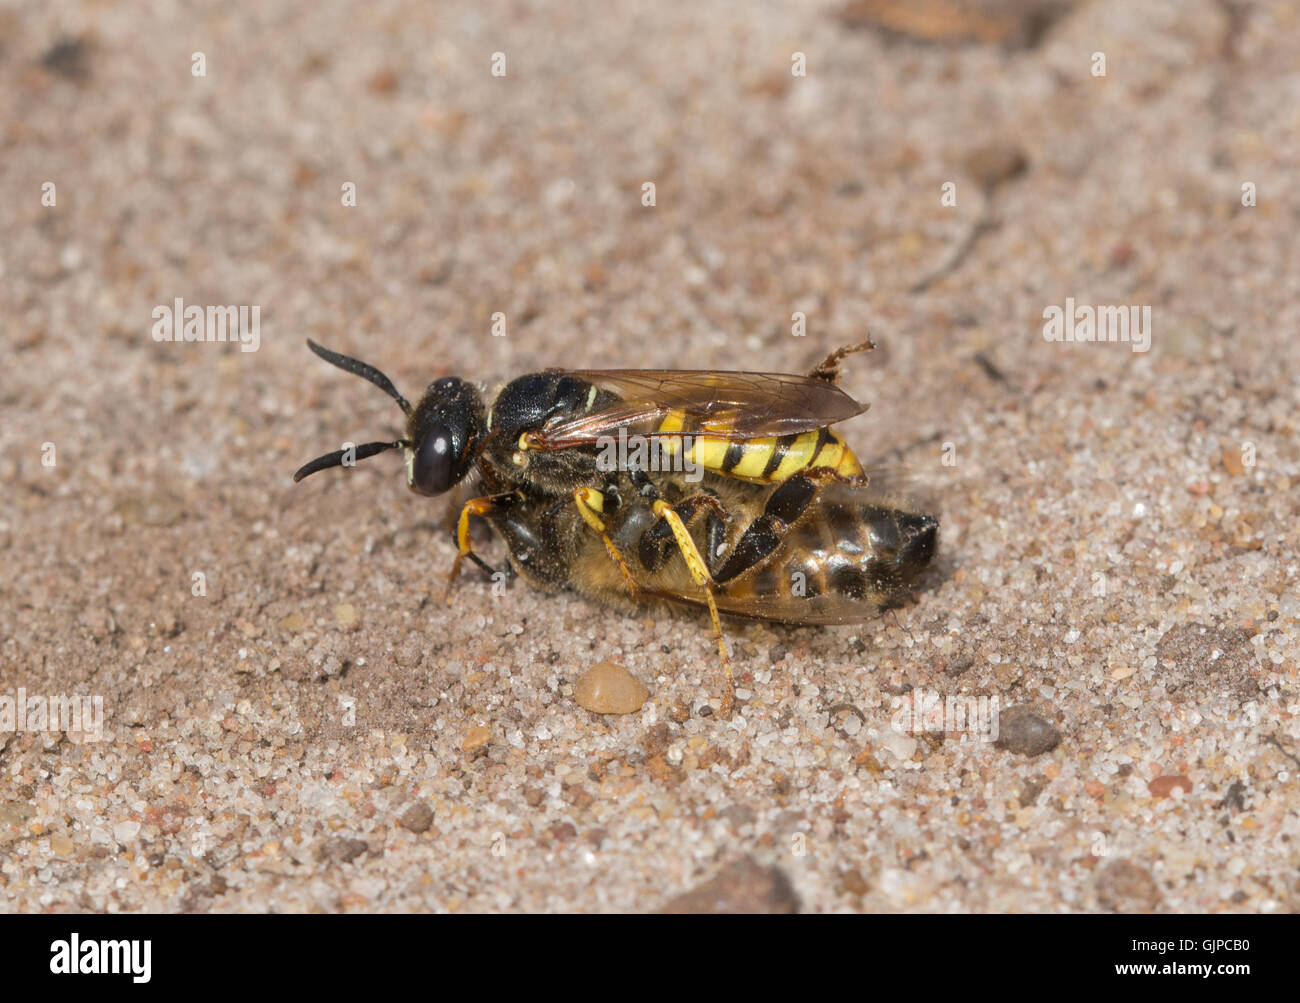 Macro d'beewolf Philanthus triangulum (WASP) avec des abeilles (Apis) s'attaquent à l'habitat de lande de sable à Surrey, Angleterre Banque D'Images